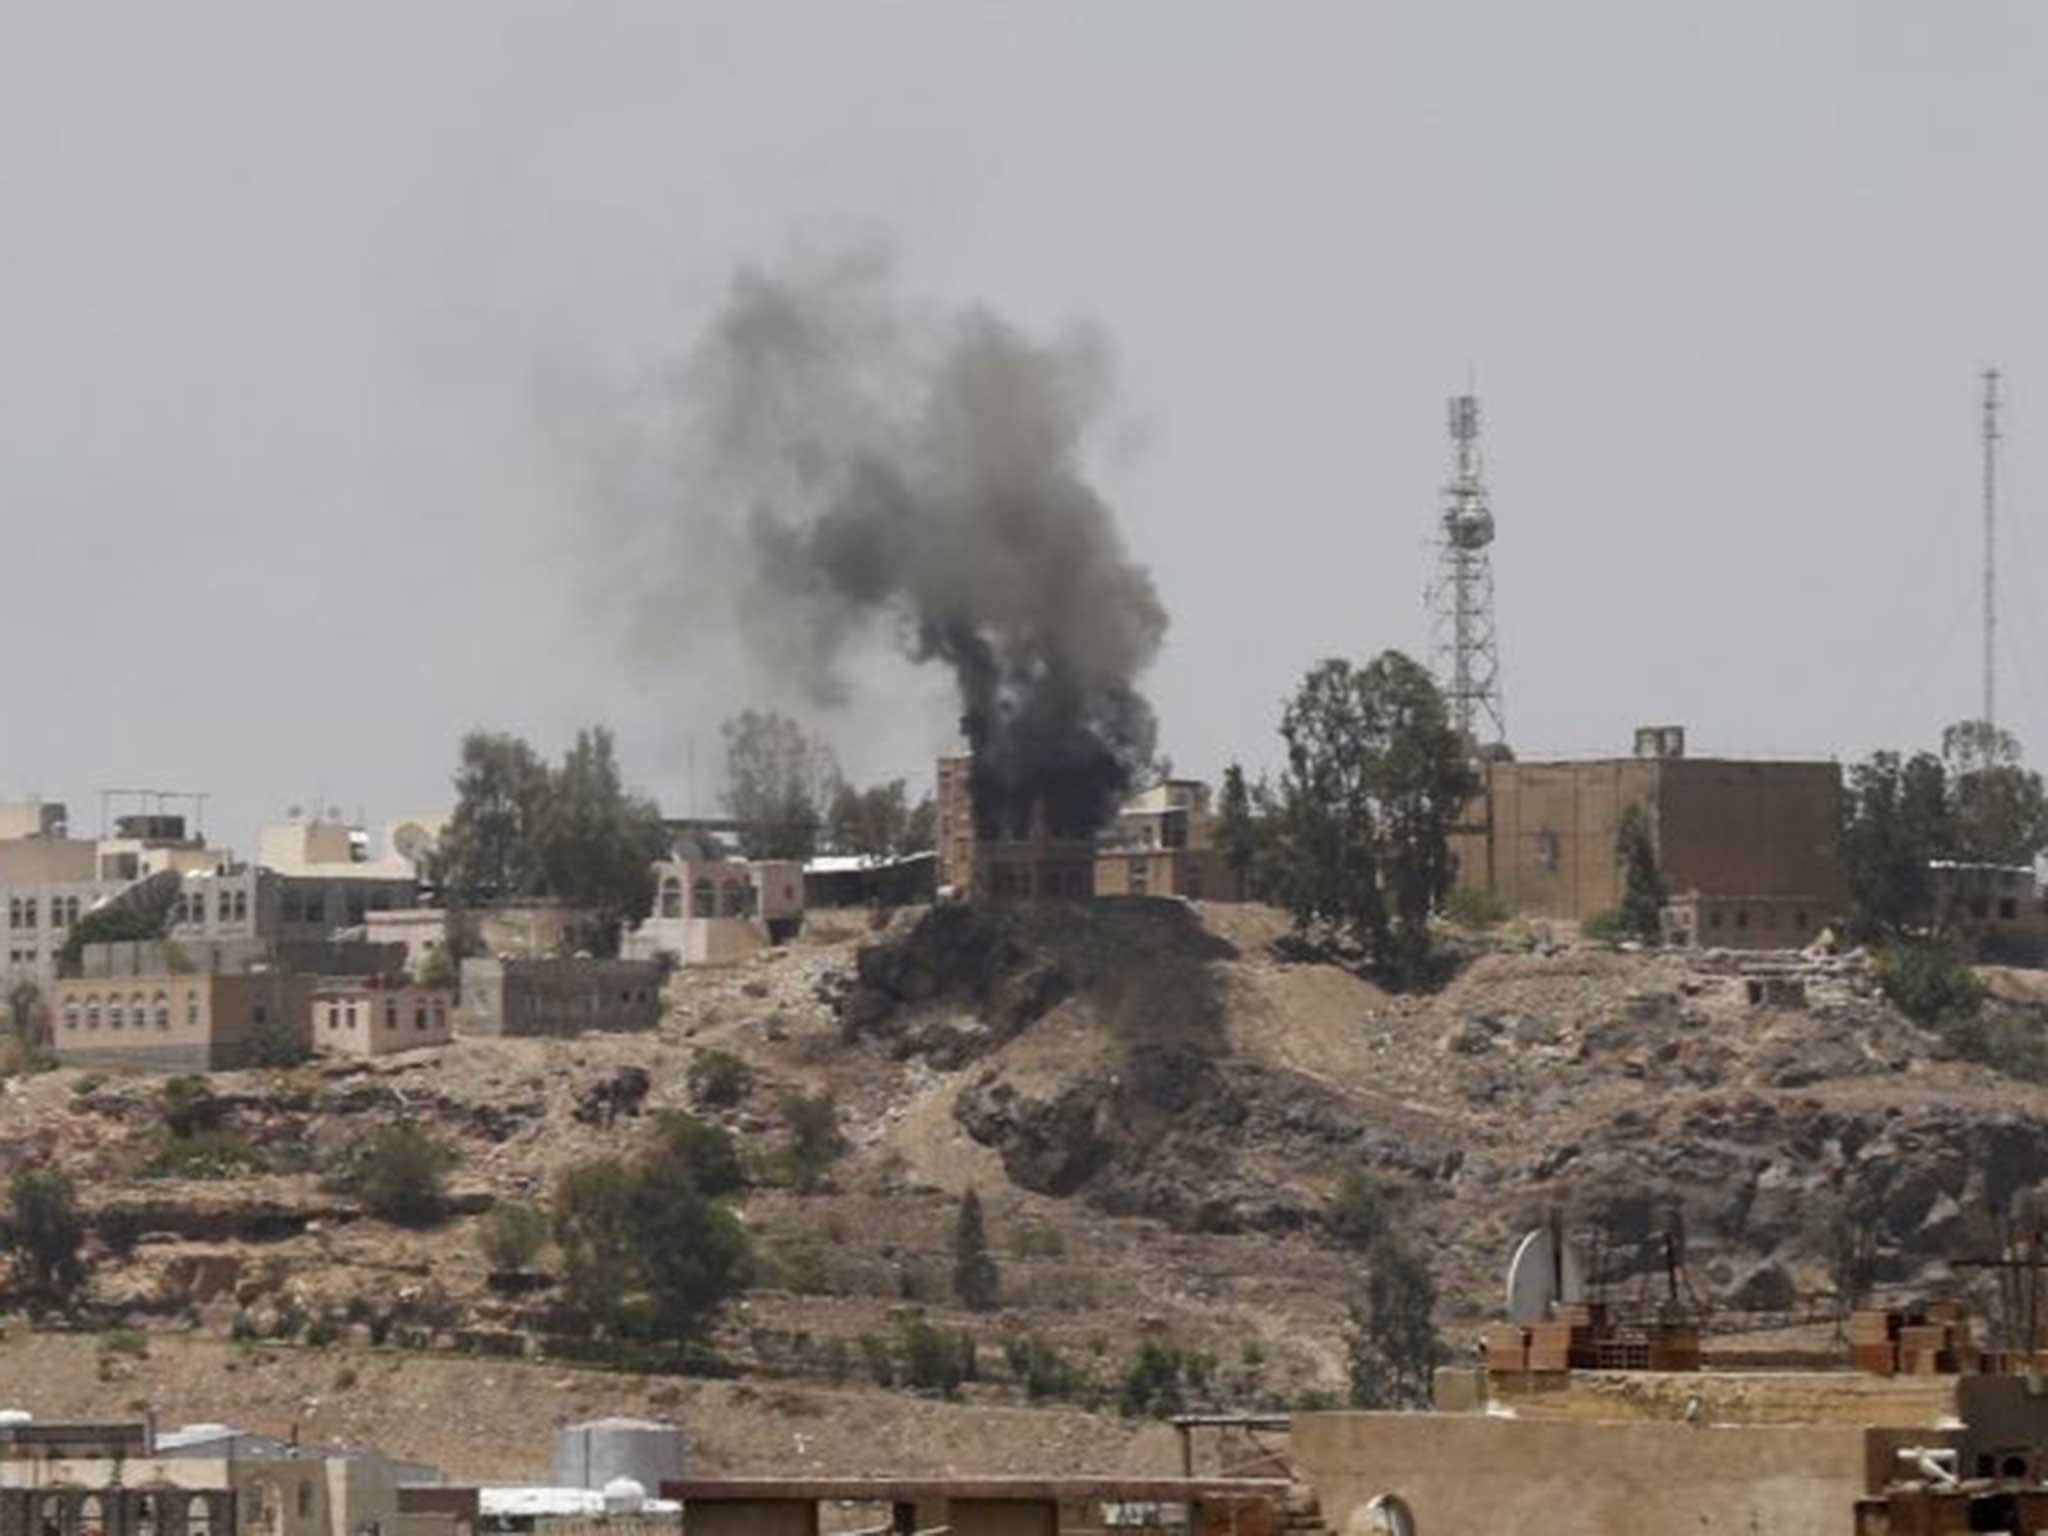 Smoke rises in Sanaa as tensions escalate